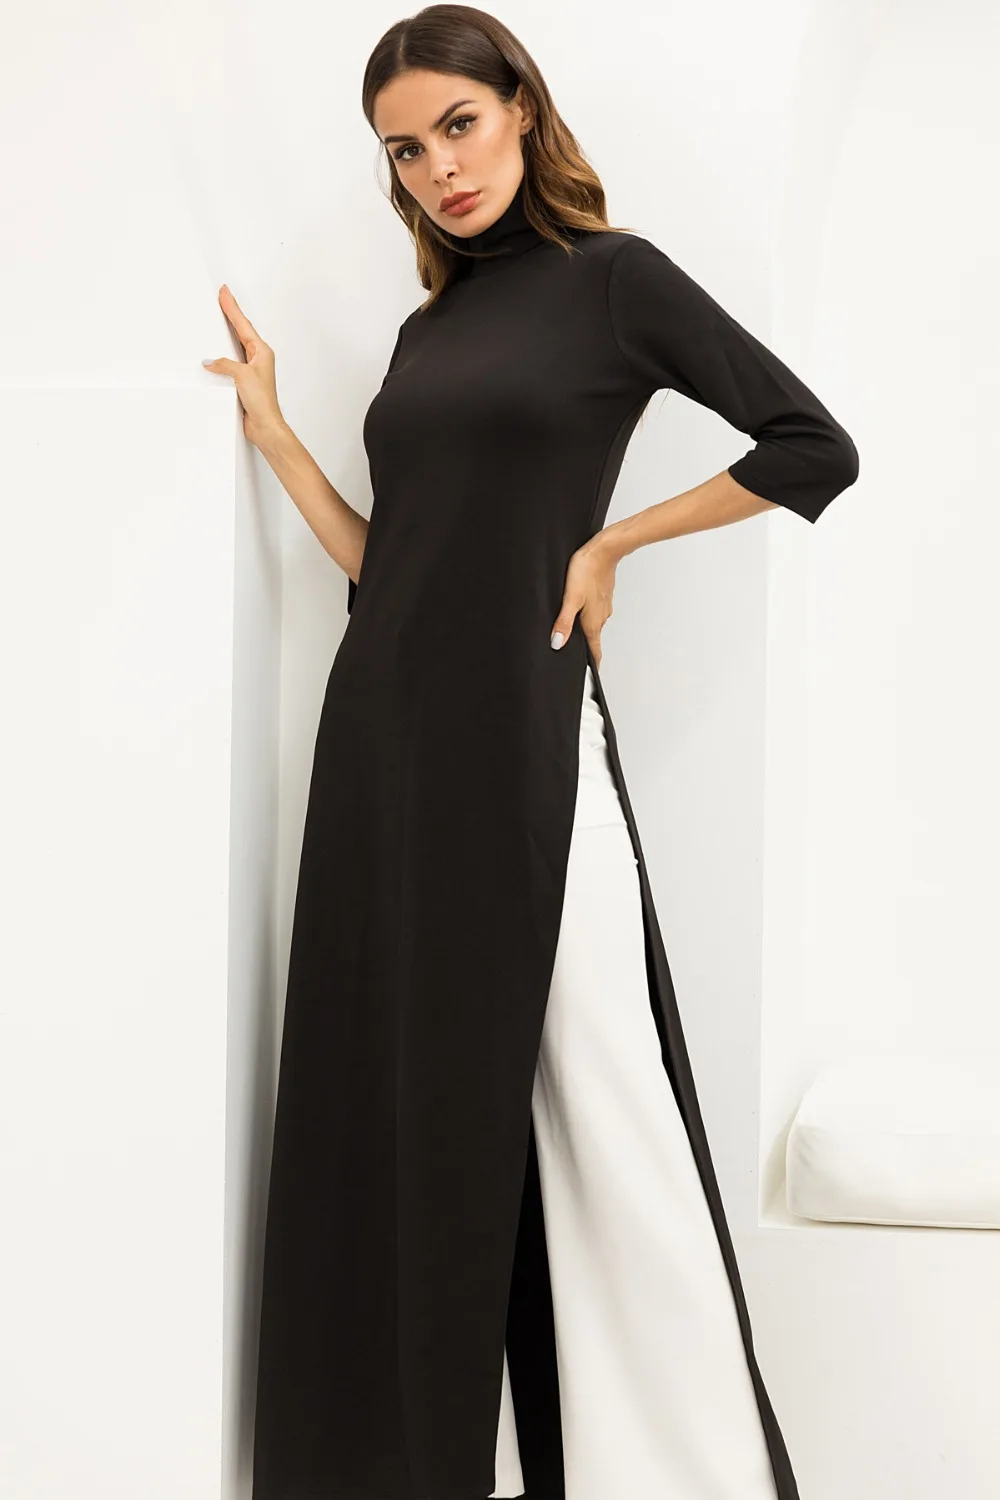 Черная футболка Макси платье для женщин водолазка с разрезом сбоку Высокая талия вечерние длинные черные облегающие платья размера плюс футболка платье Vestidos